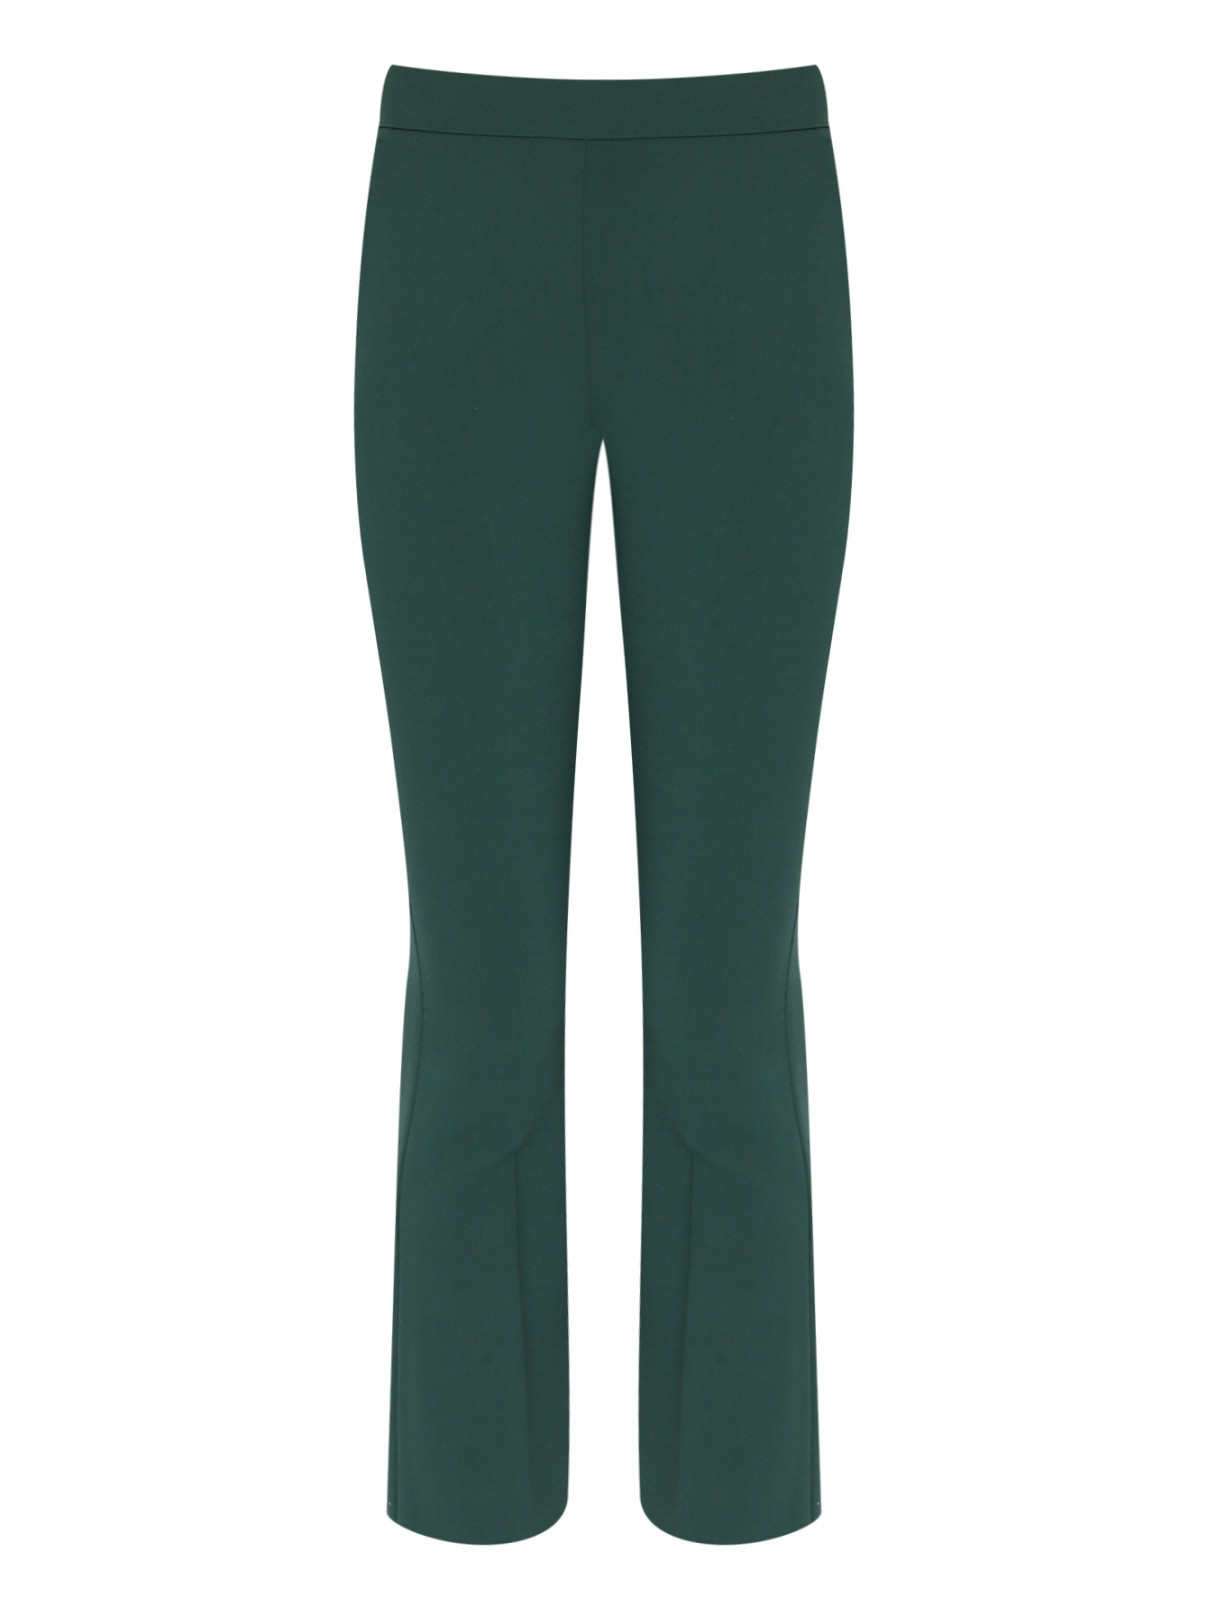 Укороченные брюки из шерсти Max Mara  –  Общий вид  – Цвет:  Зеленый